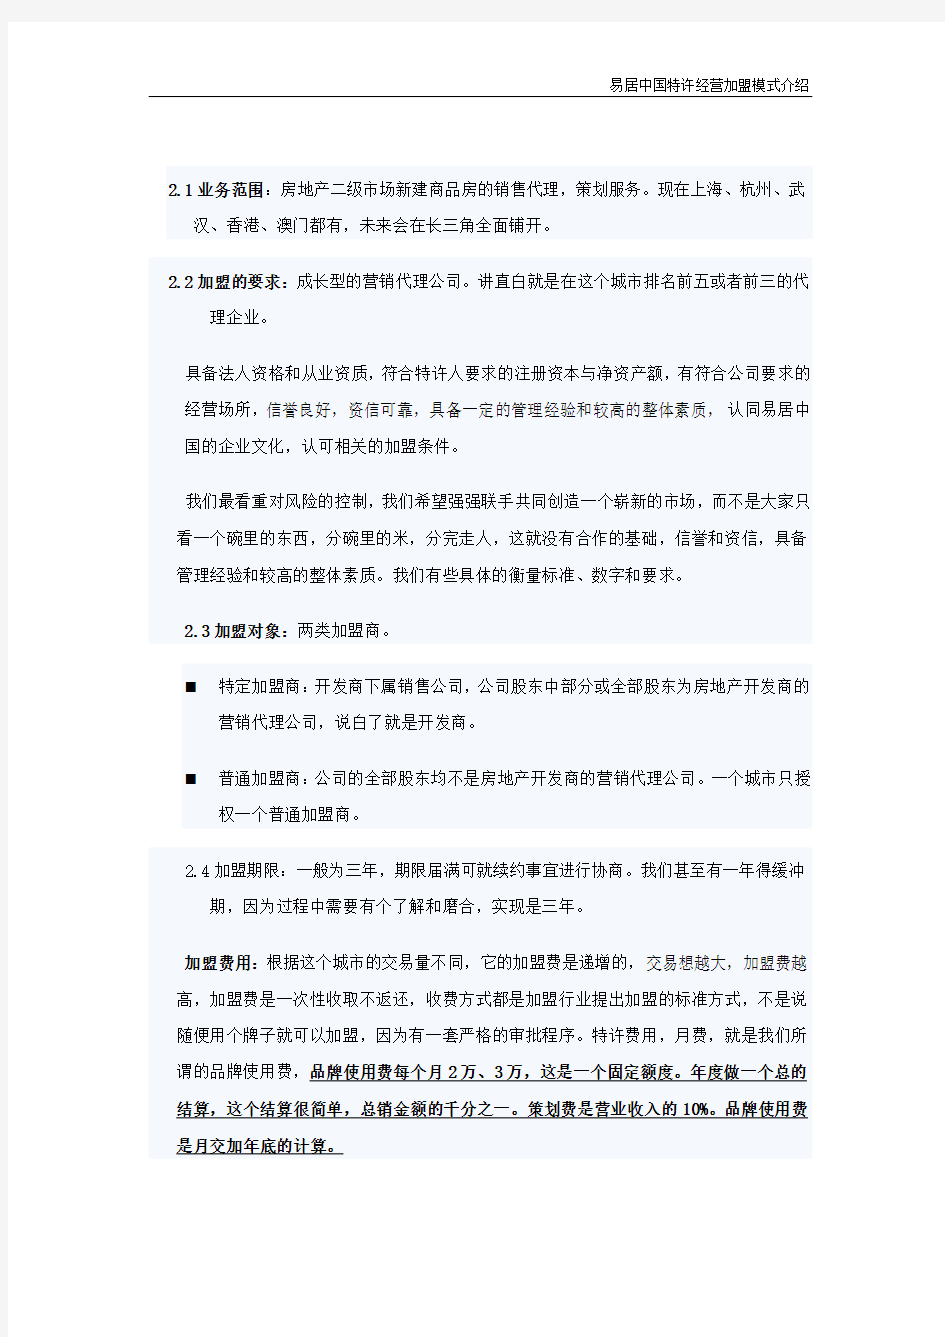 易居中国特许加盟模式介绍